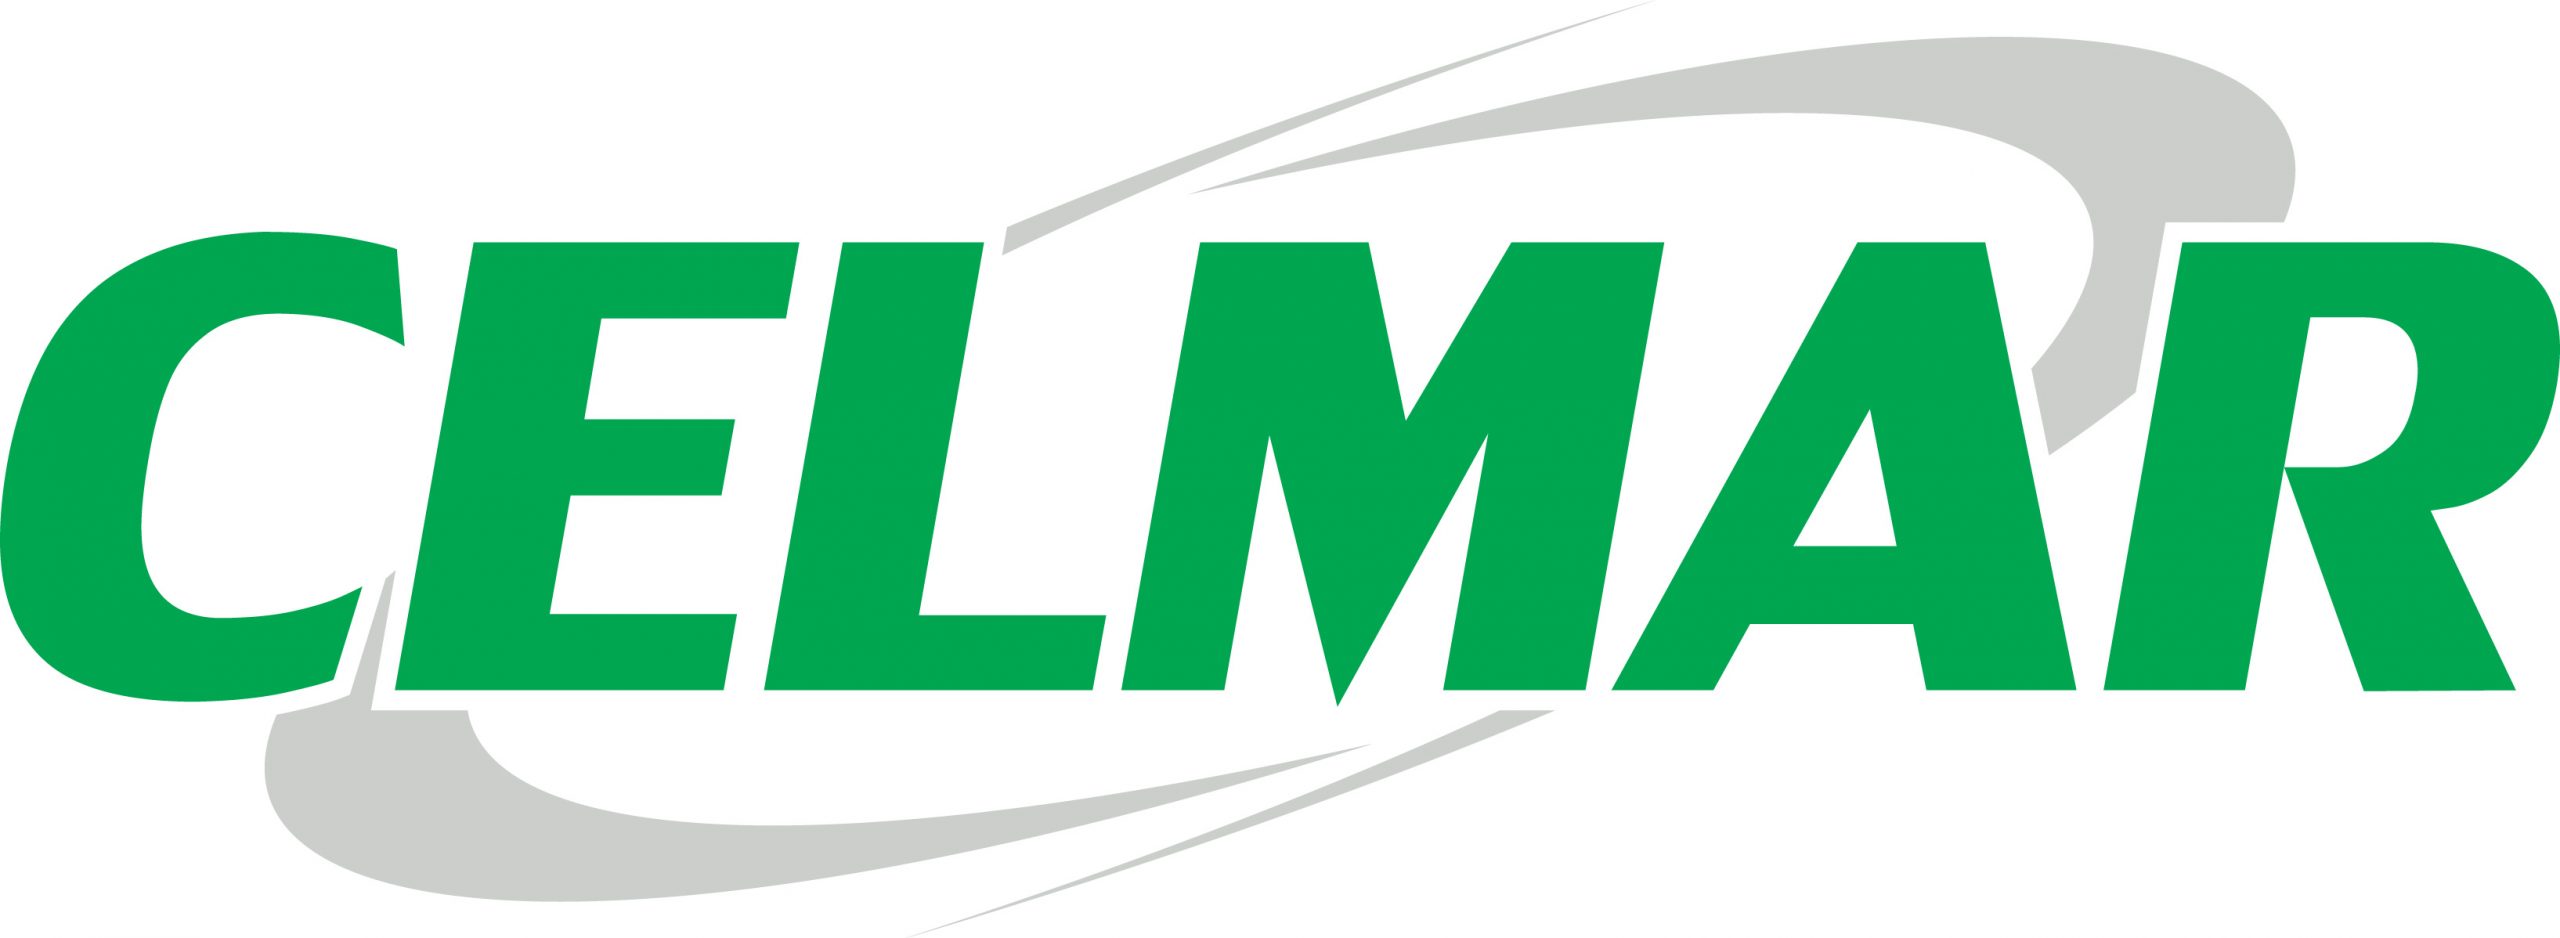 Logo Celmar Comercial